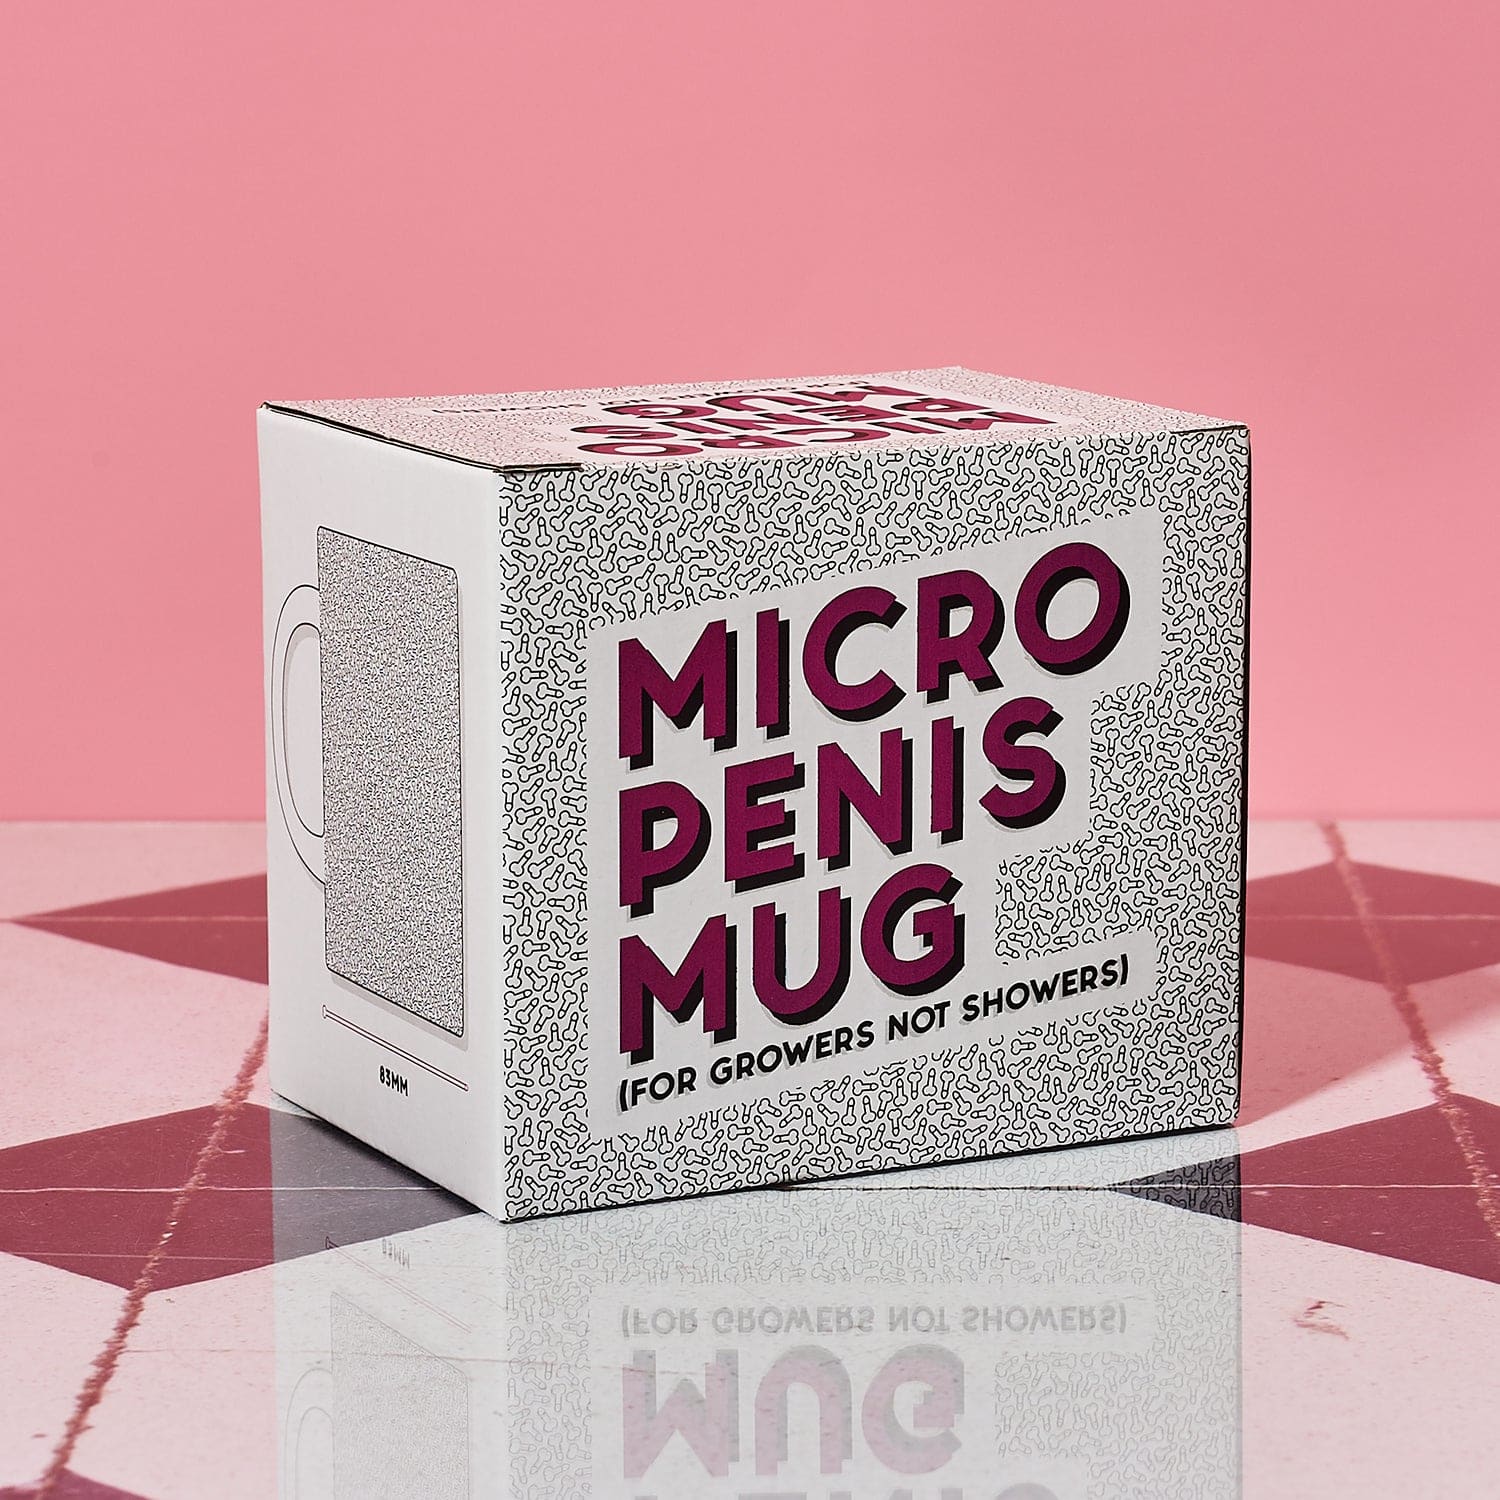 Micro Penis Mug Gr452079 0323 - Newfeb23 - Q123